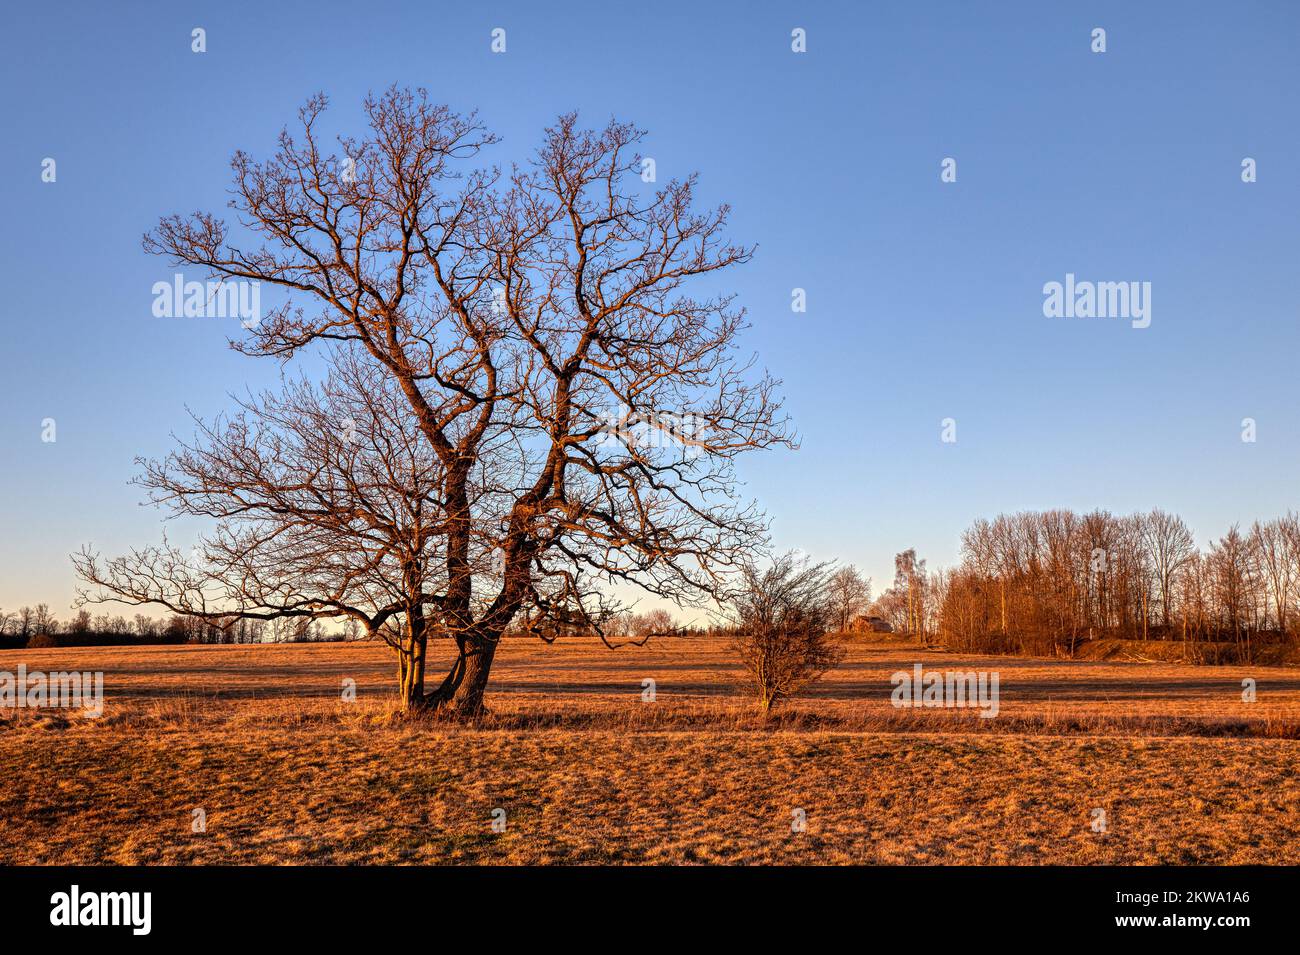 einzeln stehender Baum im Sonnenuntergang Stock Photo